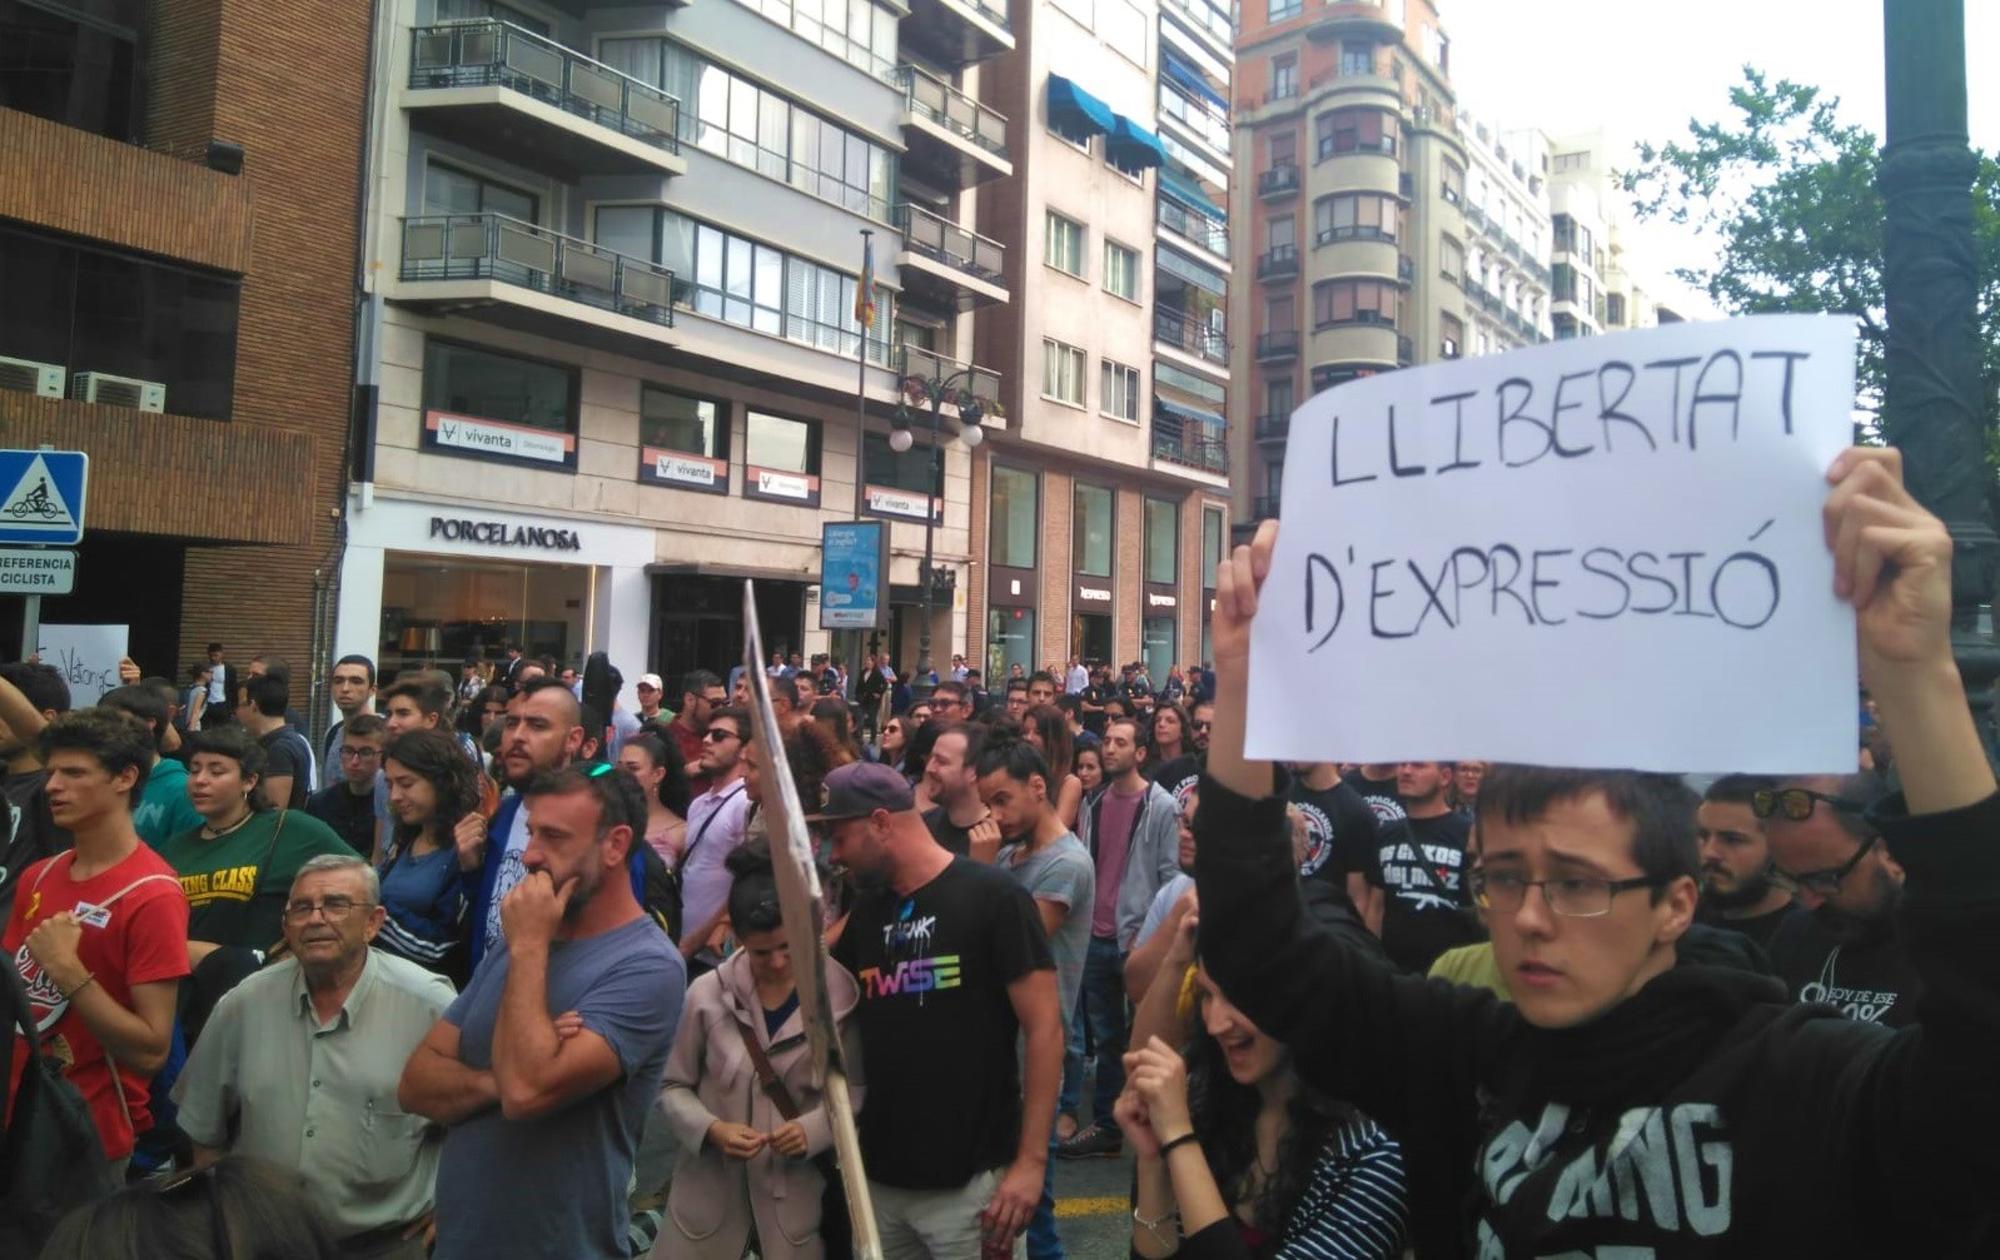 Llibertat Espressió Valencia